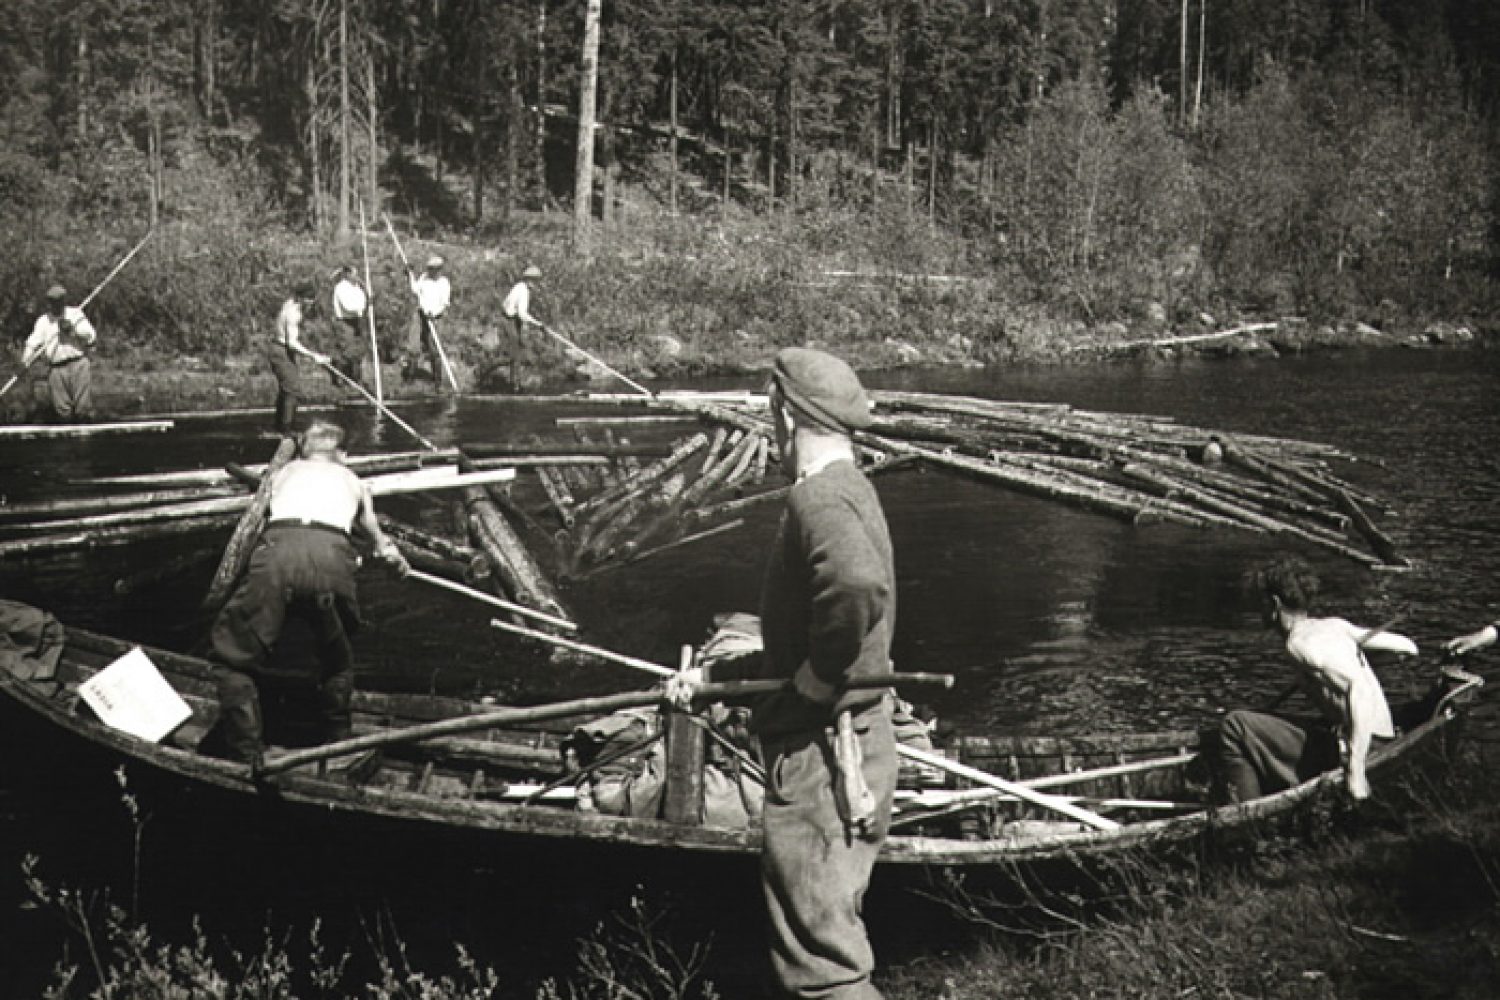 Mustavalkoisessa kuvassa joukko miehiä työskentelevät tukkien uittamisen parissa ohuella vesialueella. Miehillä on keksit ja soutuvene apunaan.